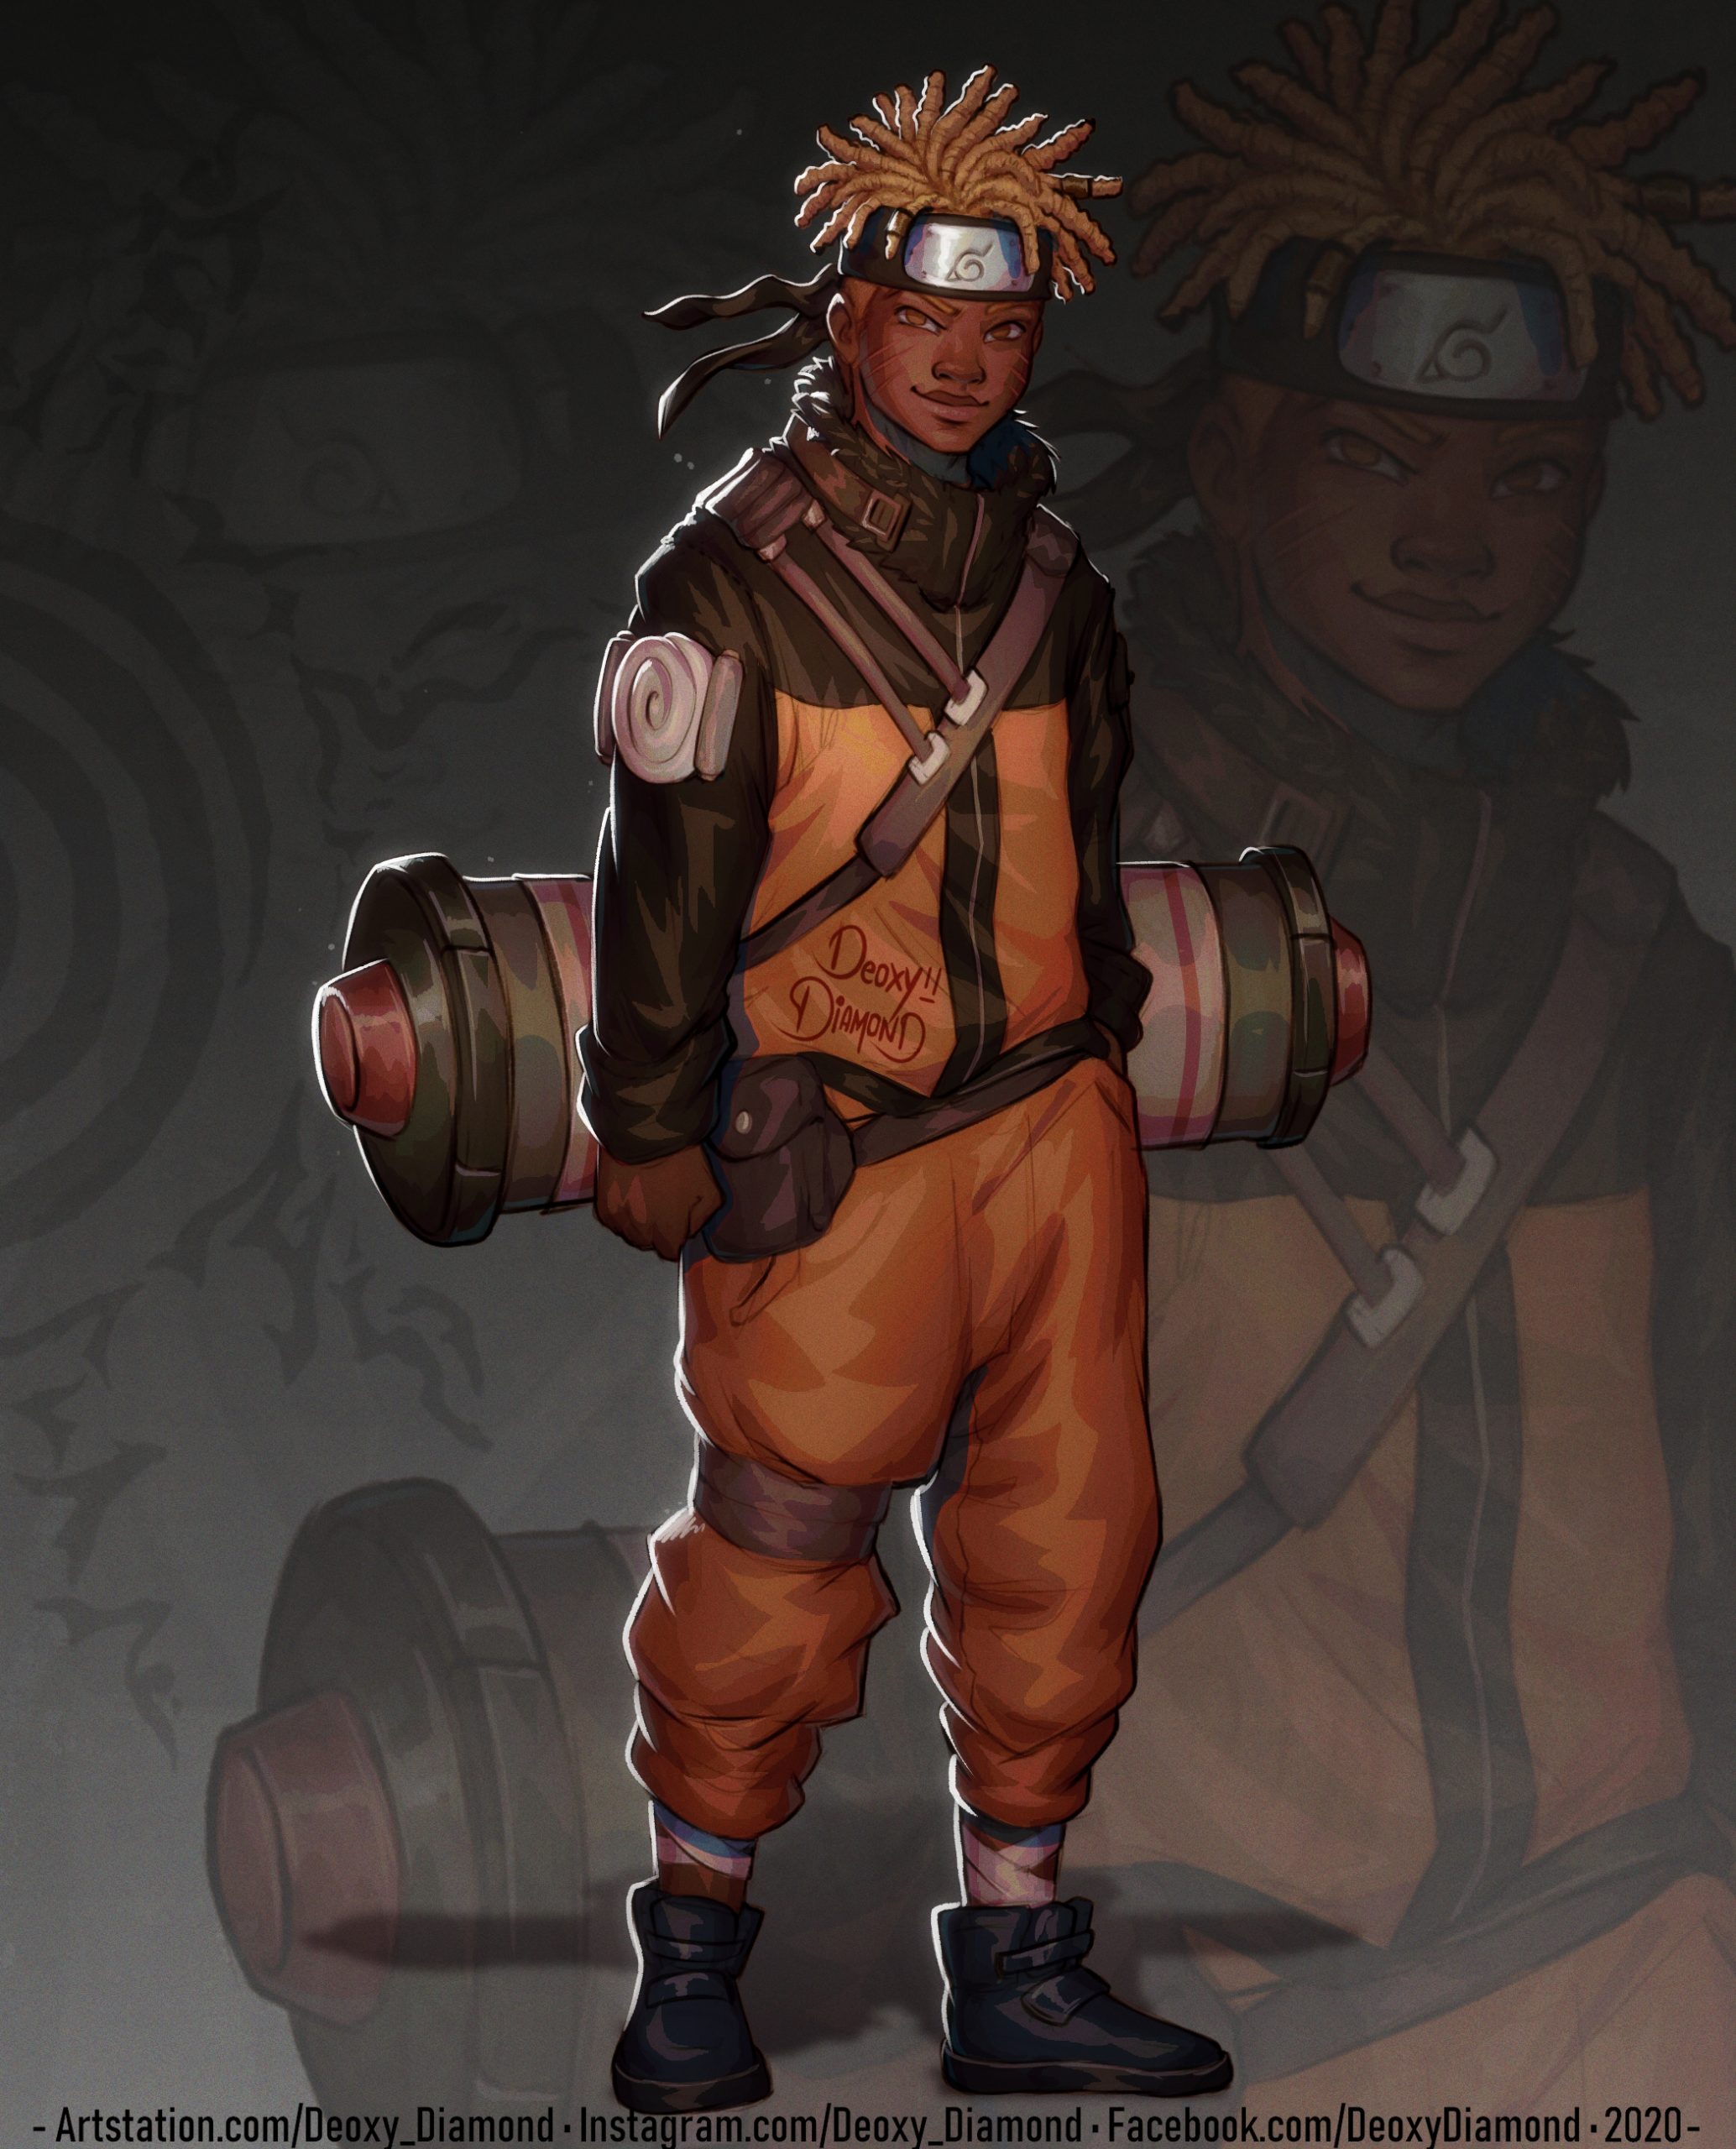 Artista reimagina ninjas de Naruto como personagens negros